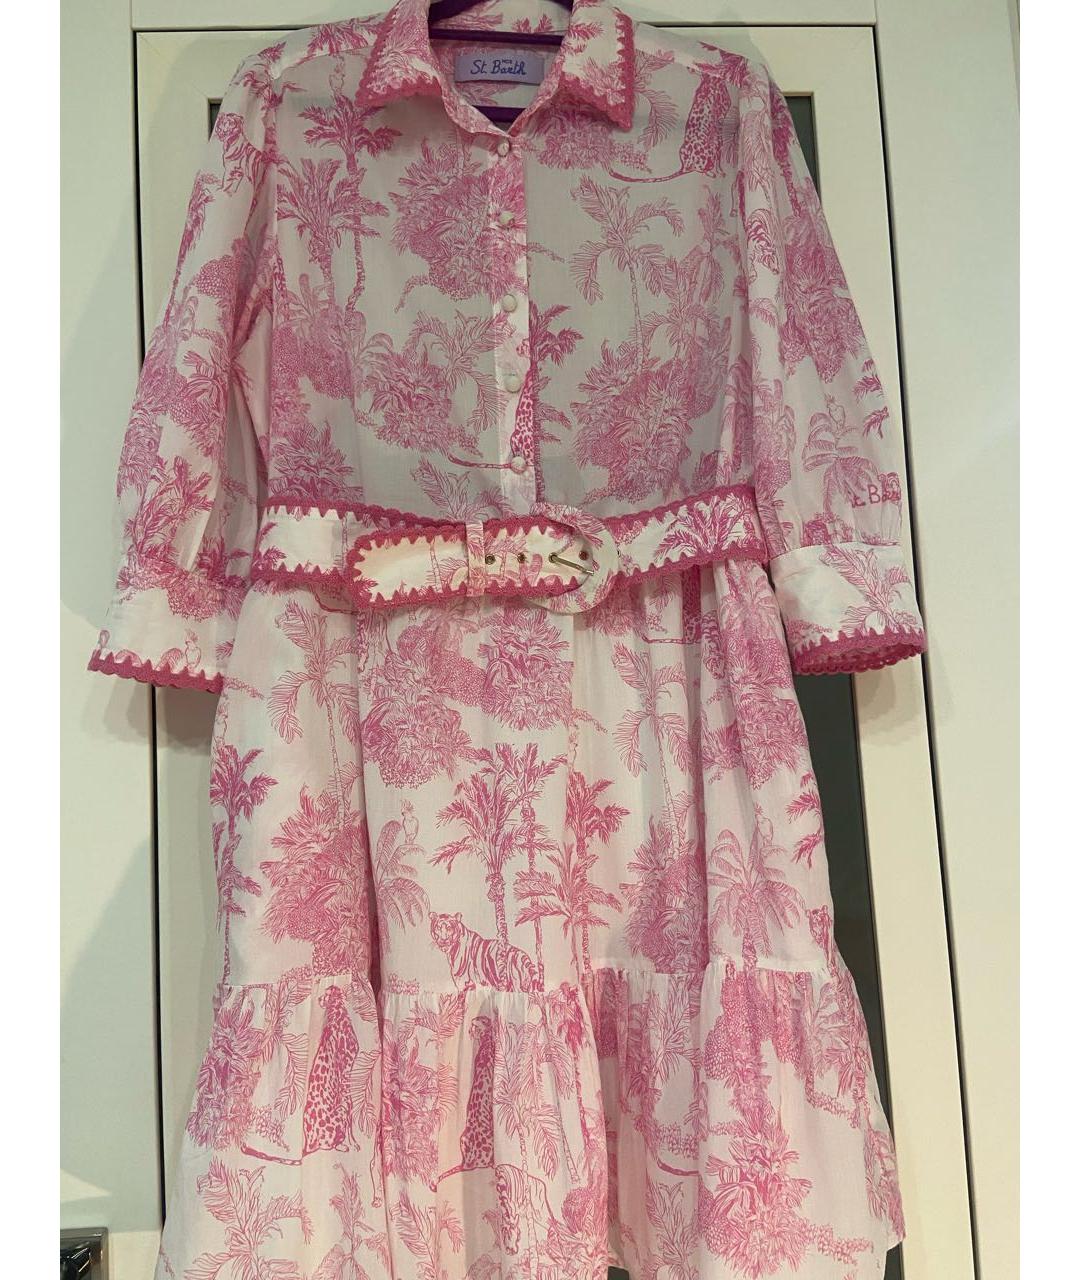 St. Barth Розовое хлопковое платье, фото 2